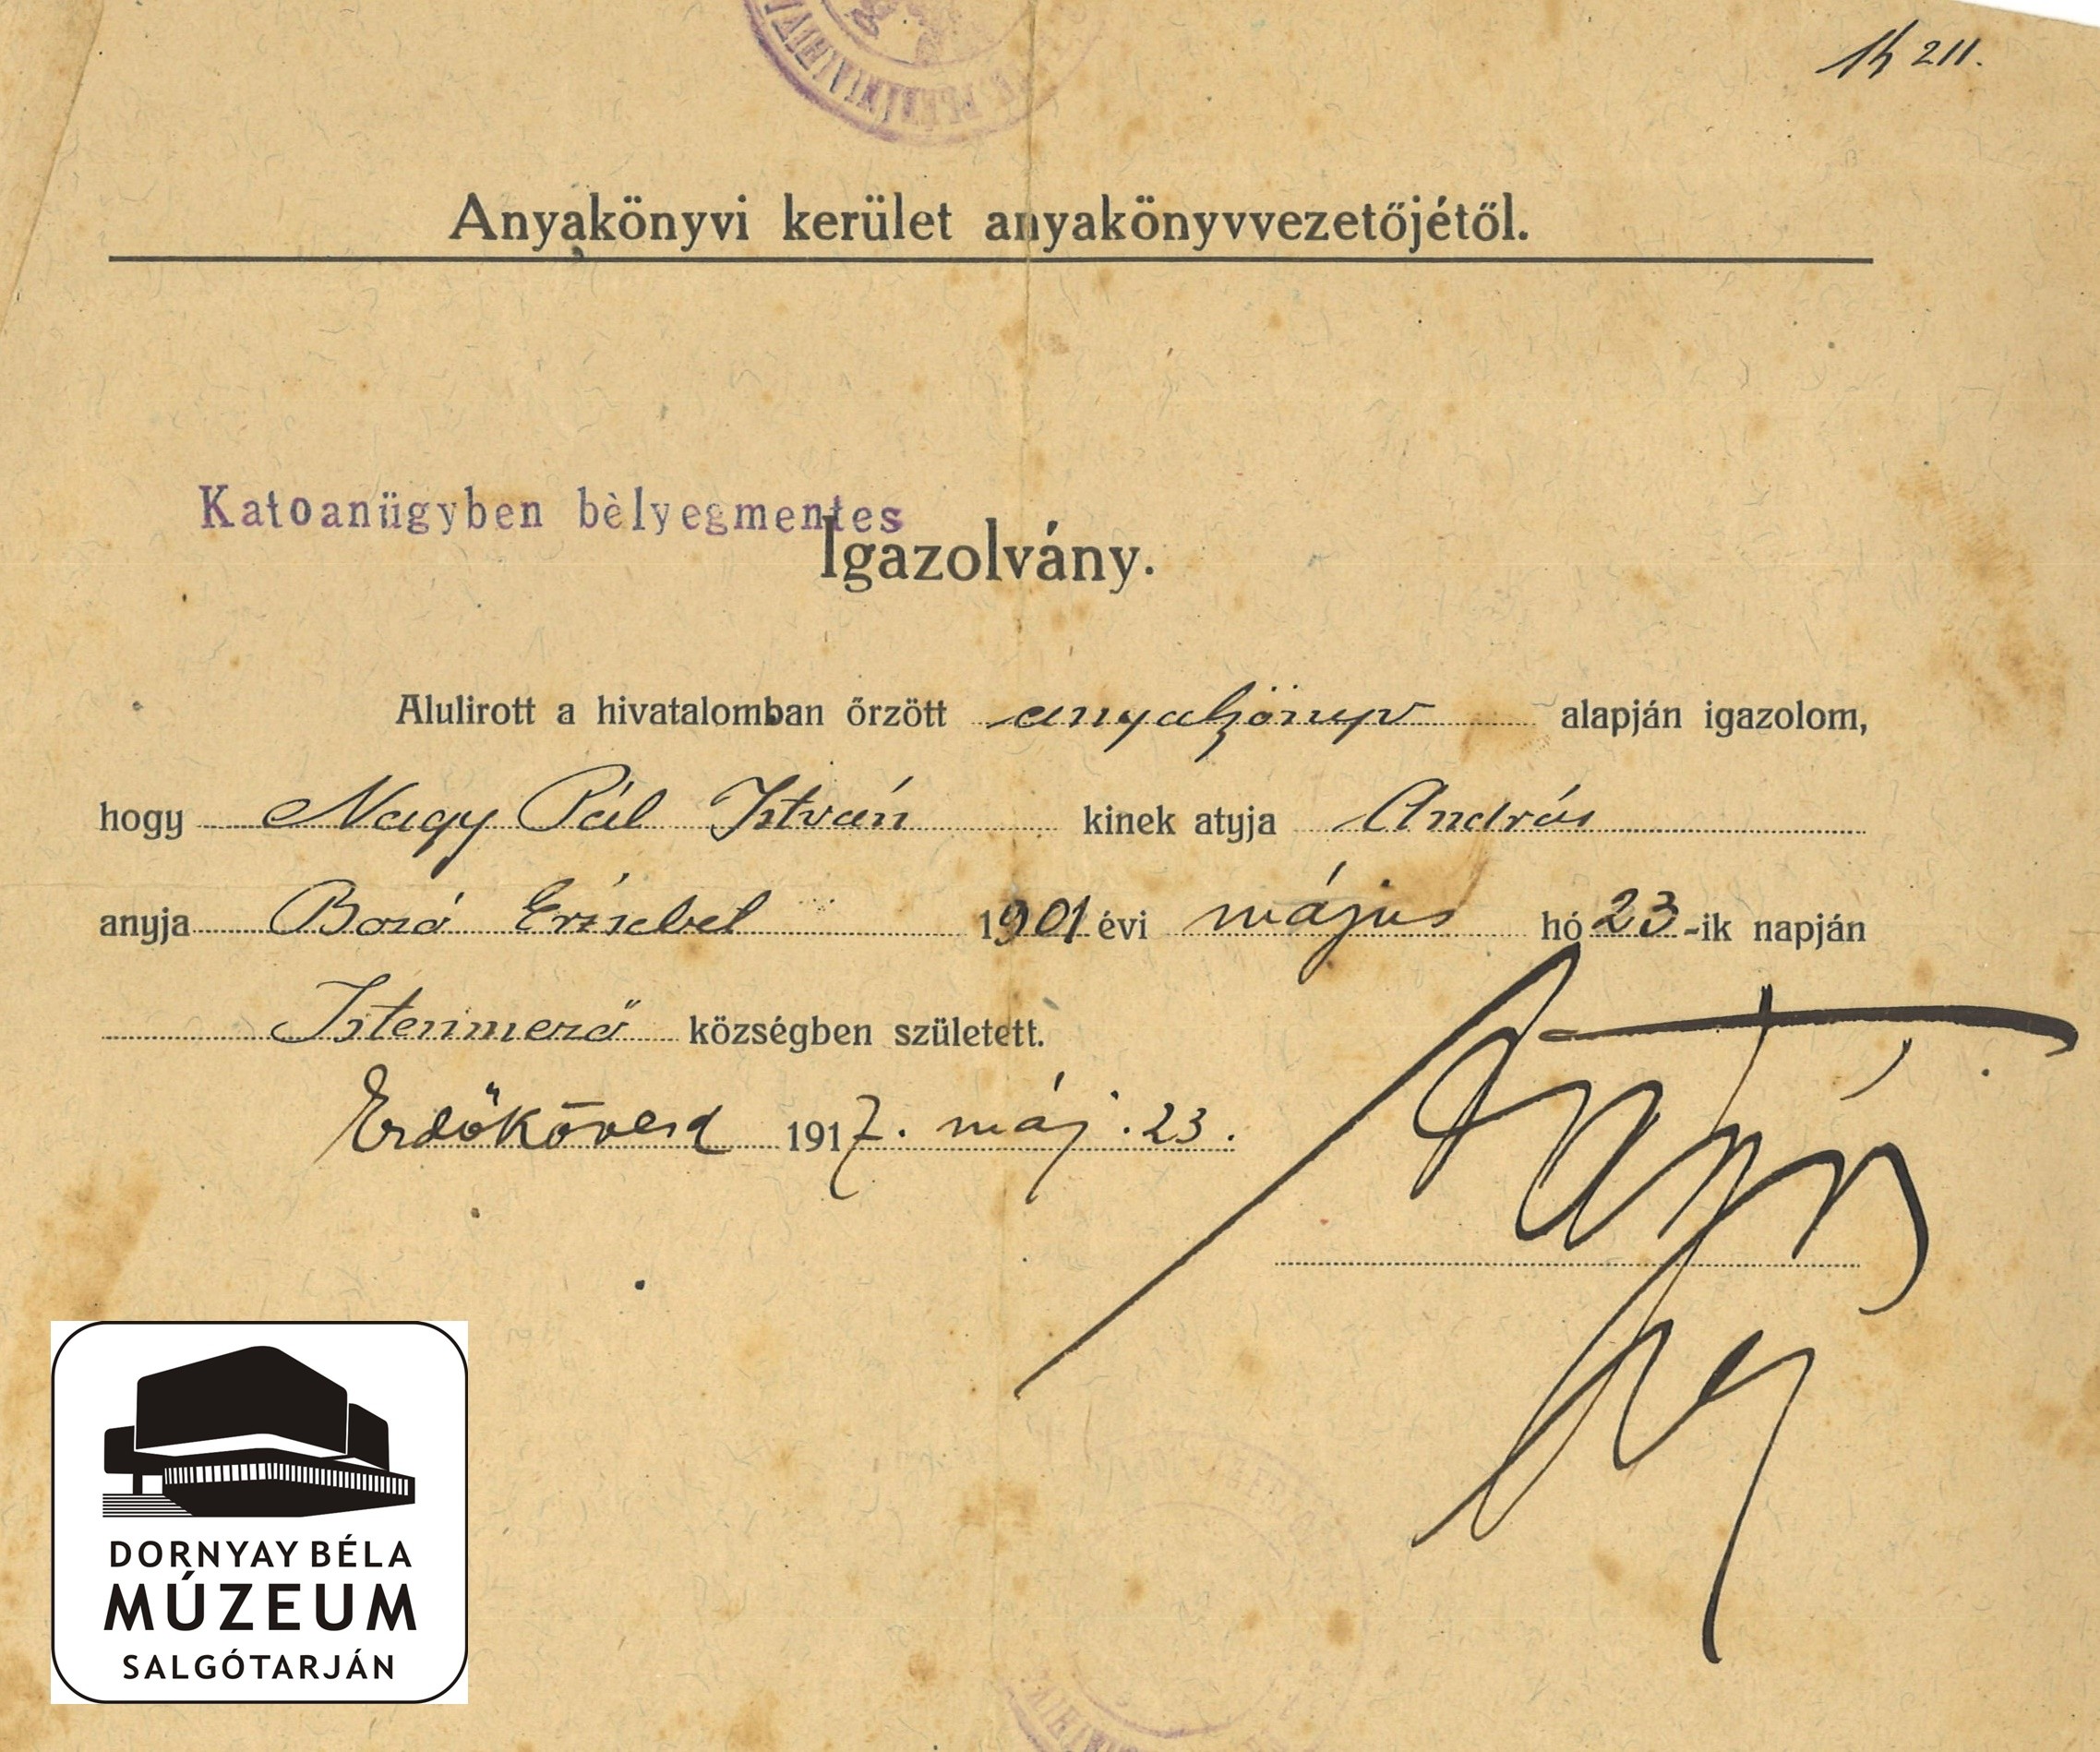 Nagypál István anyakönyvi igazolványa, melyet katonai ügyben Erdőkövesden állítottak ki. 1917.máj.23-án (Dornyay Béla Múzeum, Salgótarján CC BY-NC-SA)